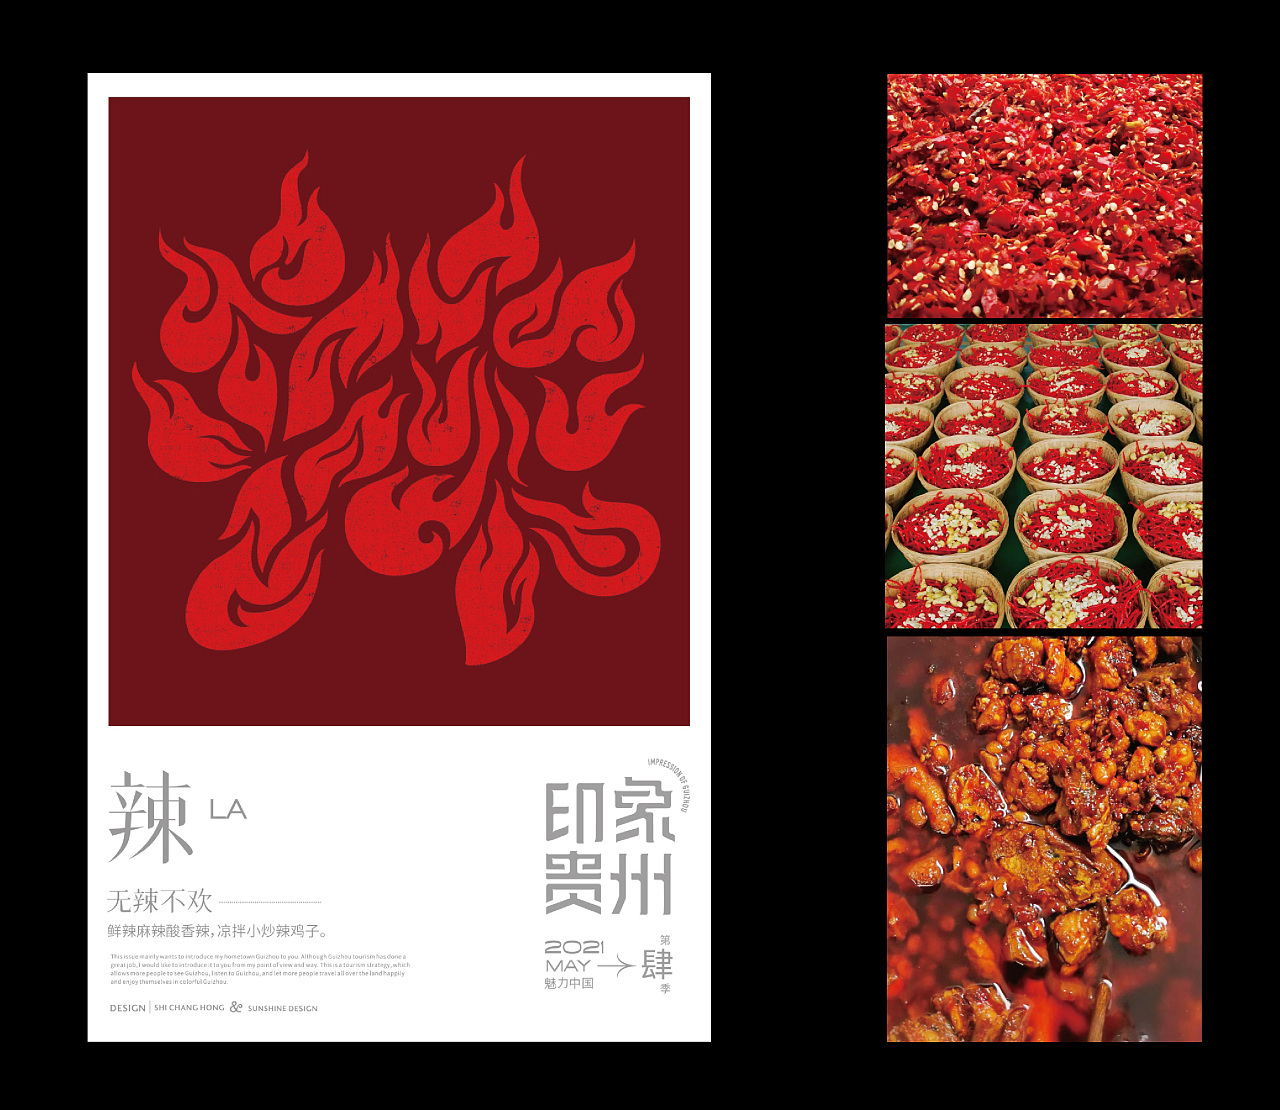 上行设计 / 石昌鸿魅力中国第4季---《印象贵州》